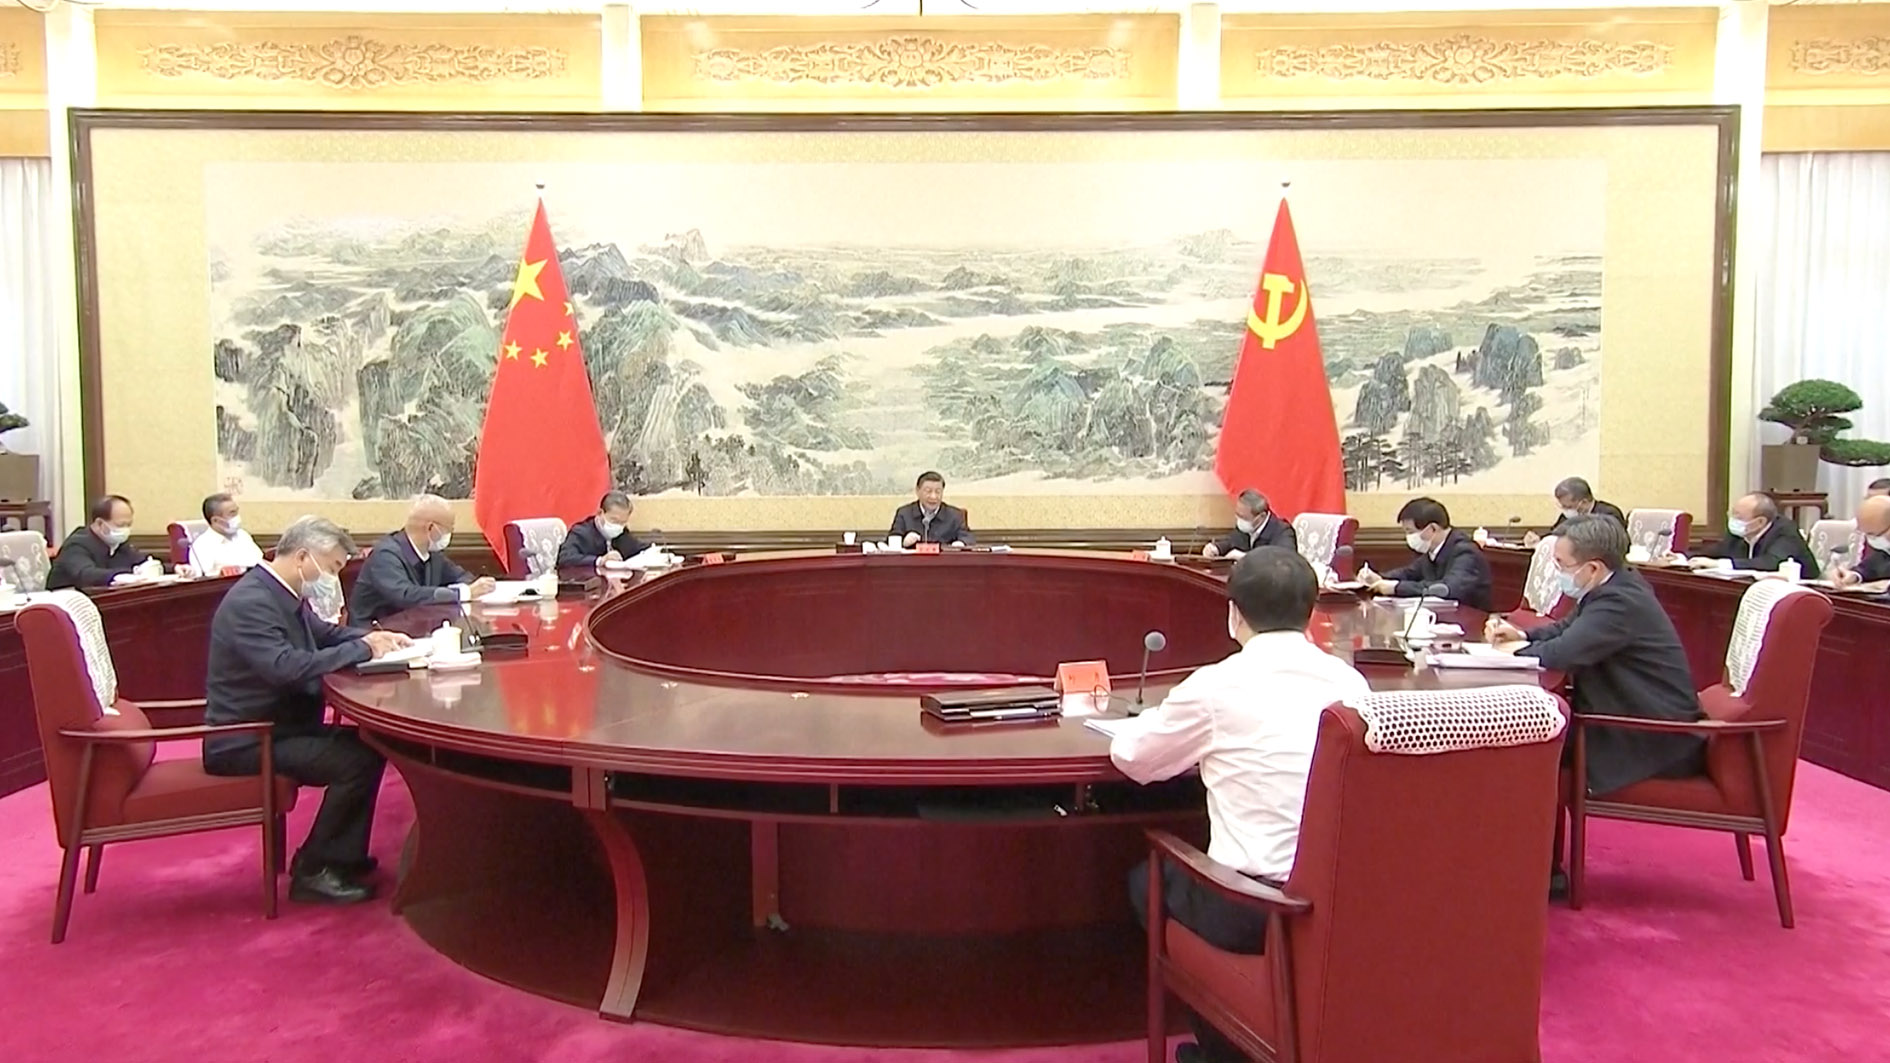 تأکید شی جین پینگ بر تقویت آموزش برای تسهیل شکوفایی چین